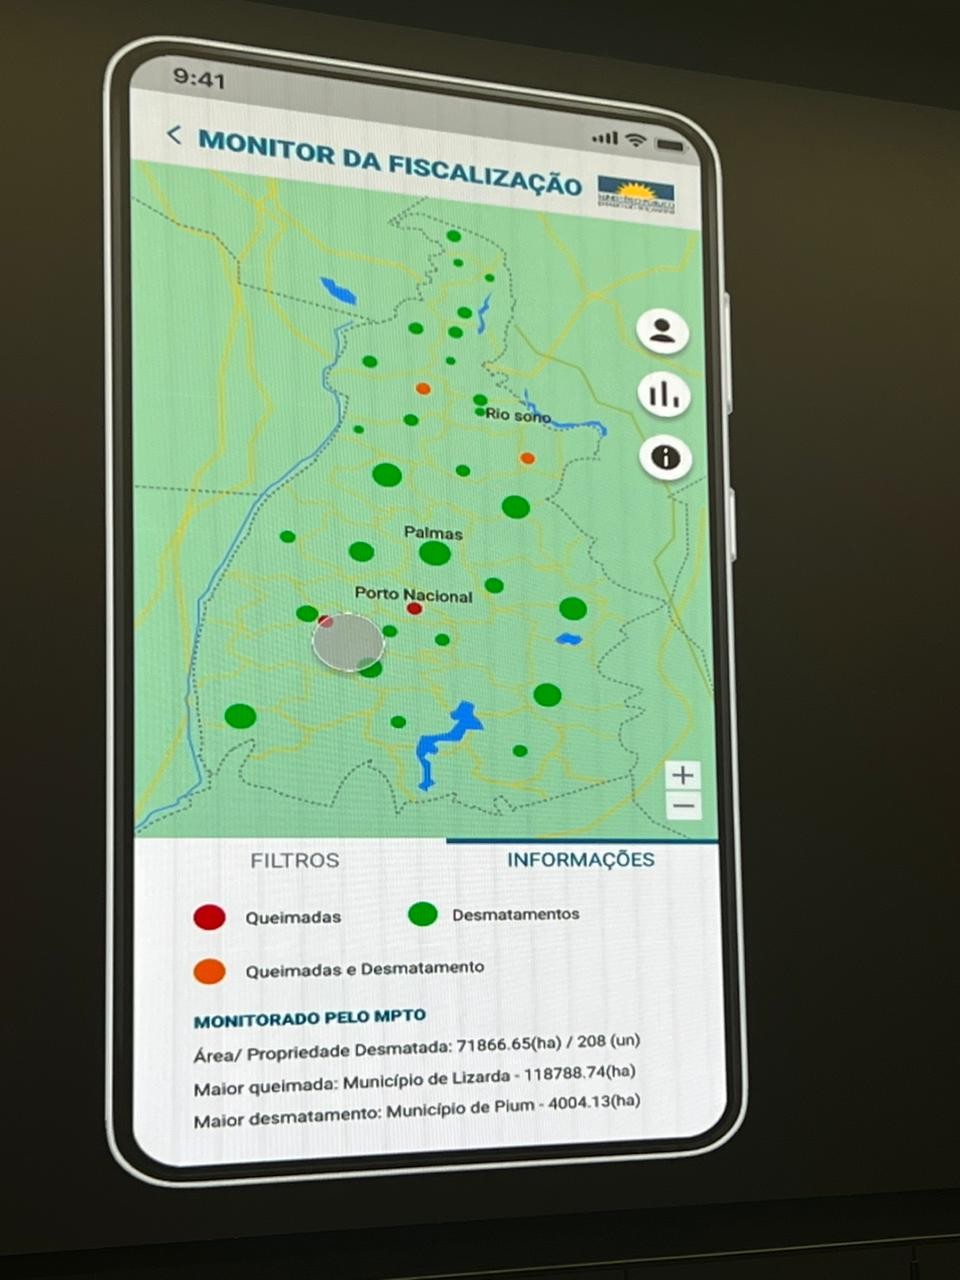 Público poderá conferir, no aplicativo, locais onde há ocorrências de desmatamentos e queimadas